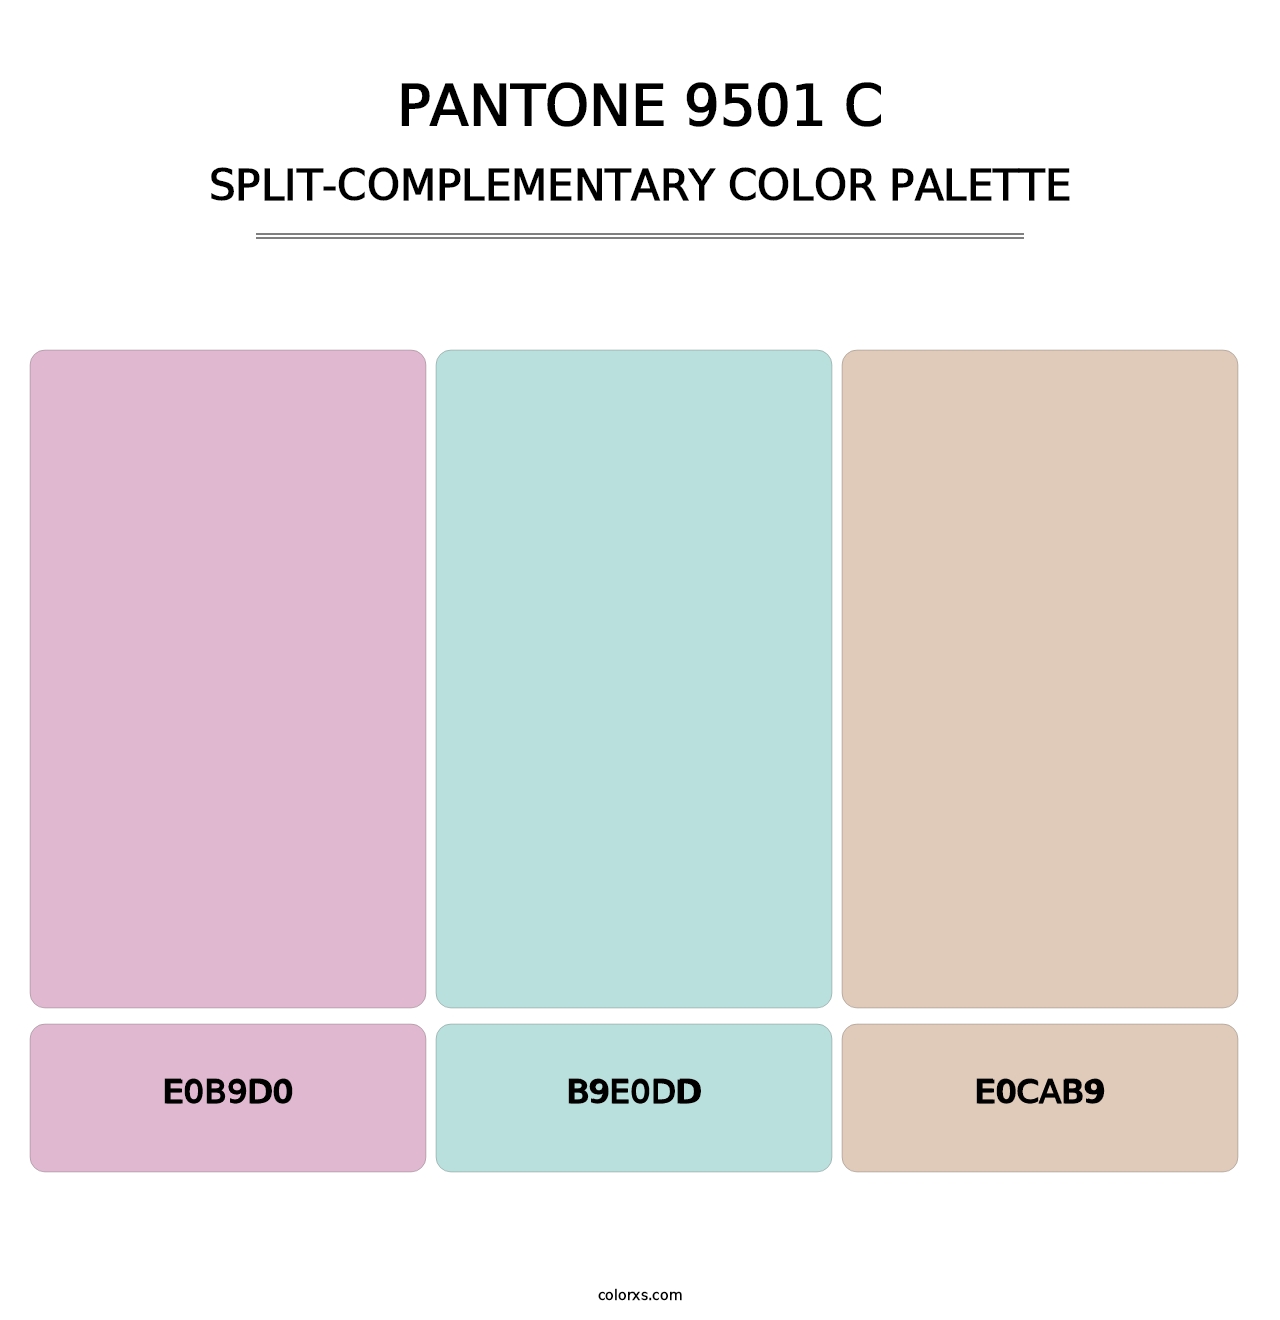 PANTONE 9501 C - Split-Complementary Color Palette